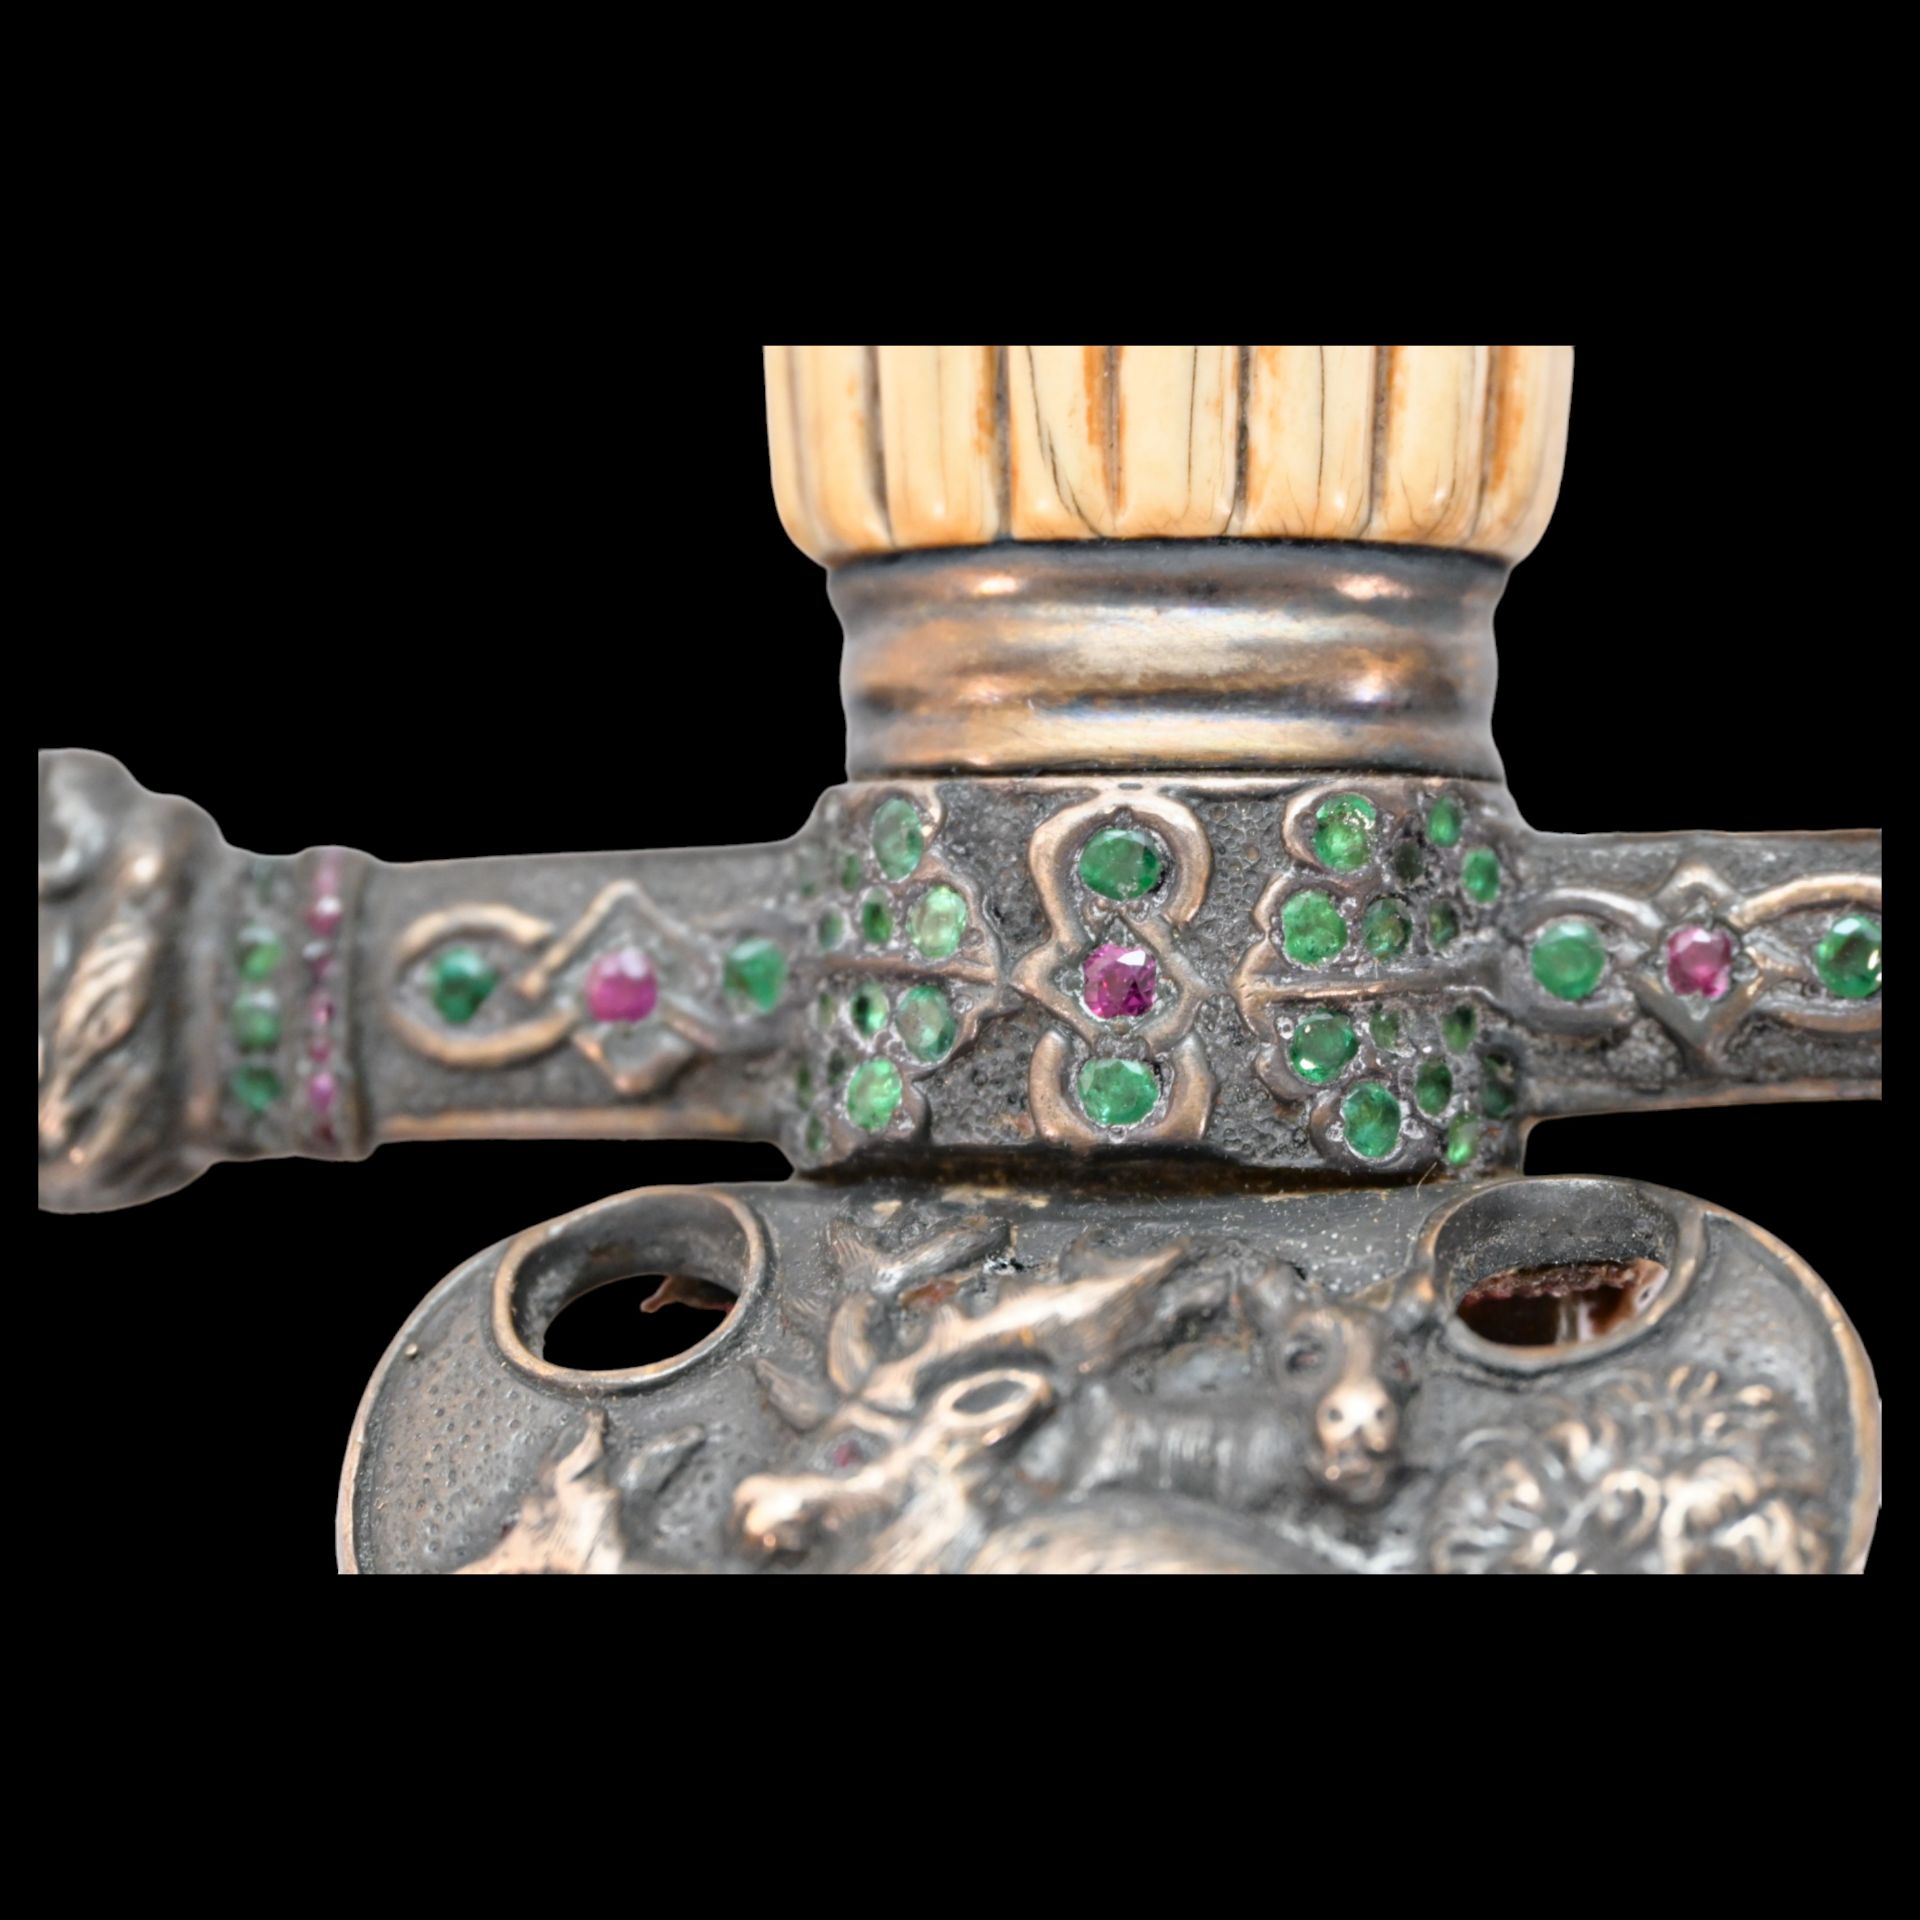 Rare hunting dagger, silver plated, gilding, precious stones, Russian Empire, 1890. - Bild 7 aus 29